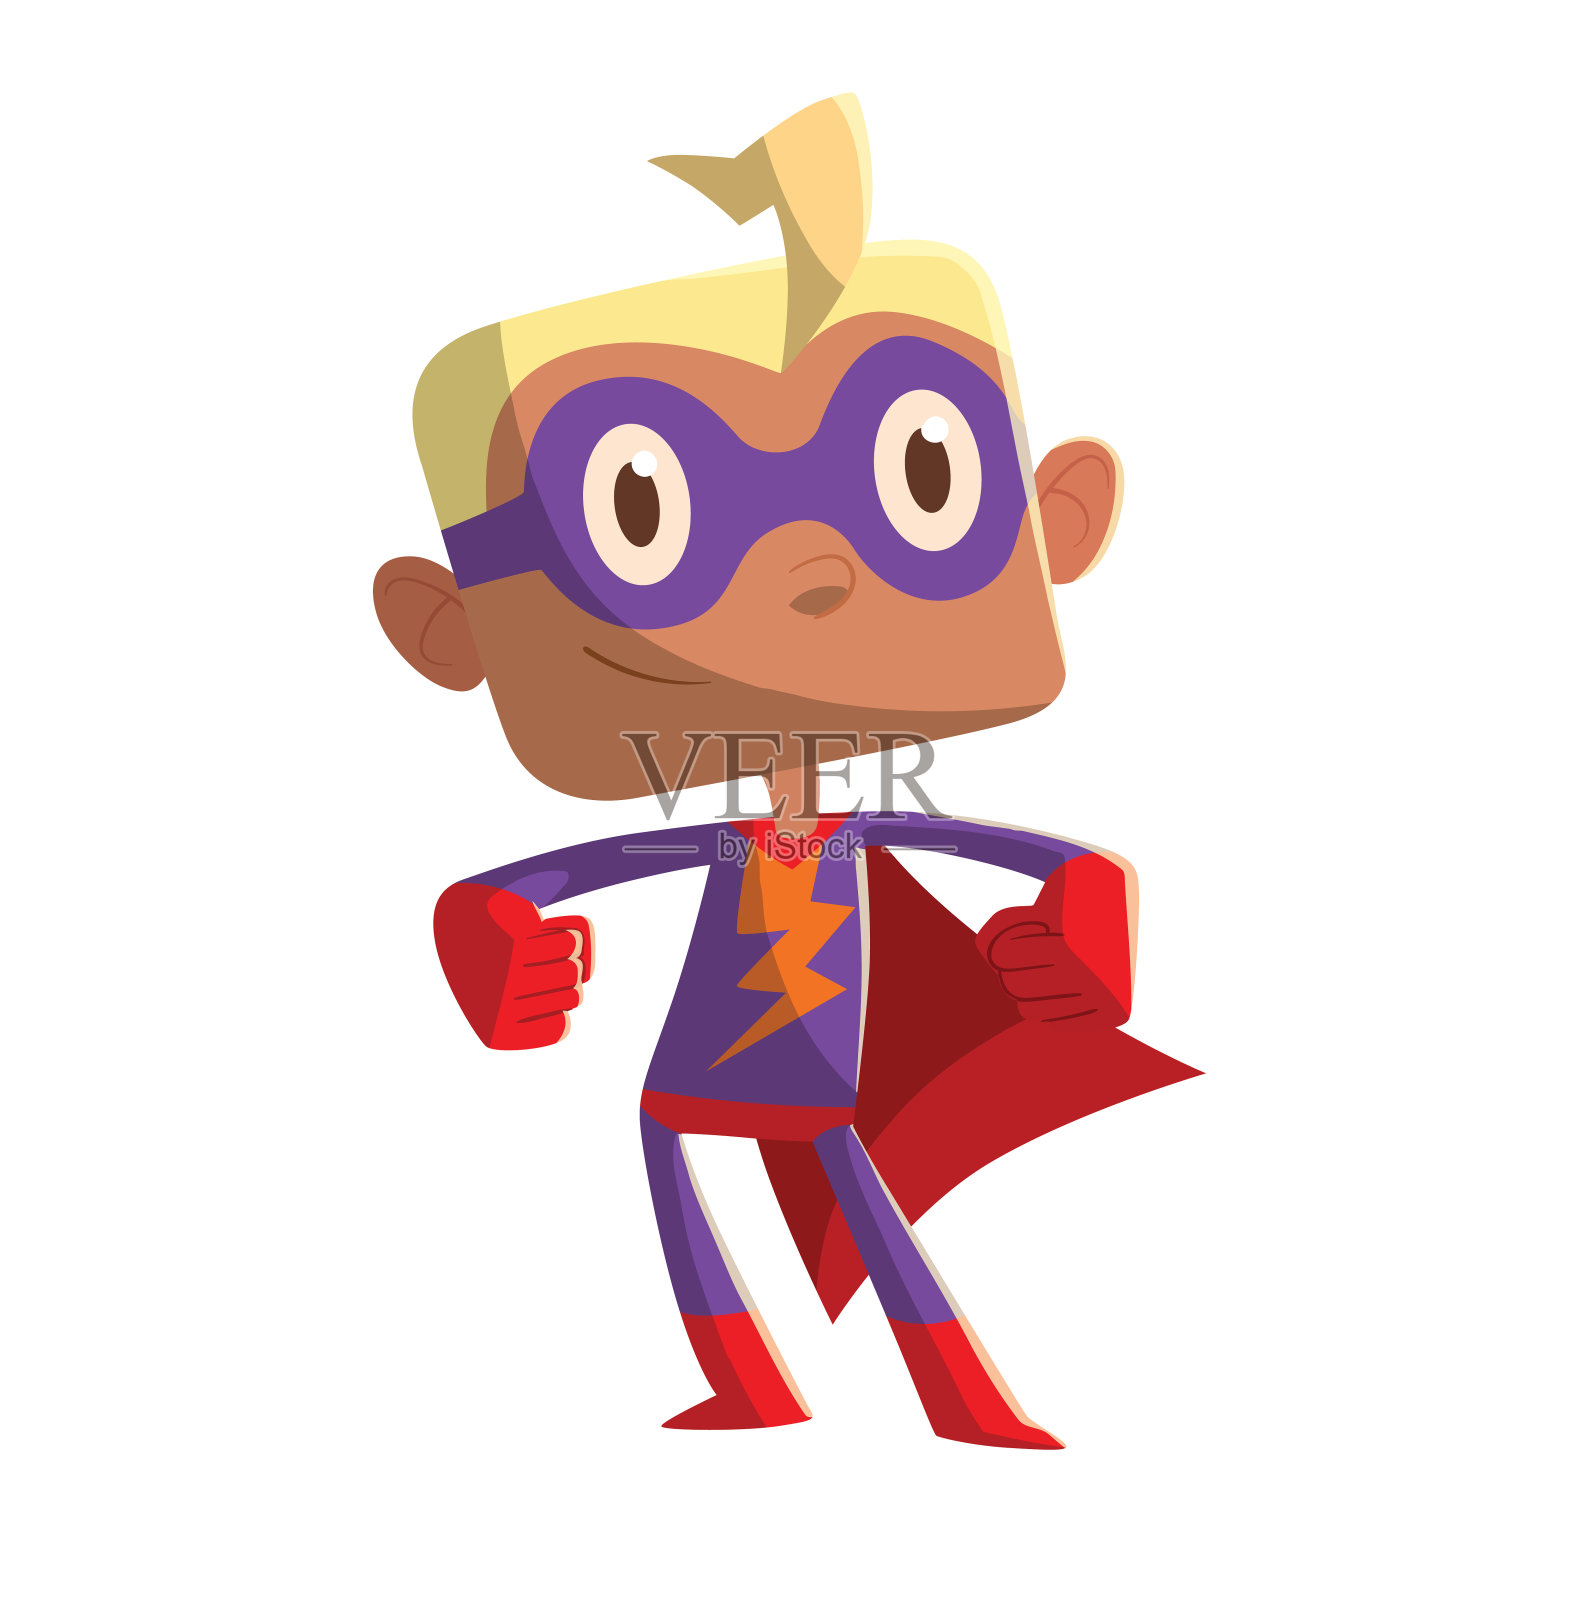 穿着紫色超级英雄服装的有趣小男孩设计元素图片